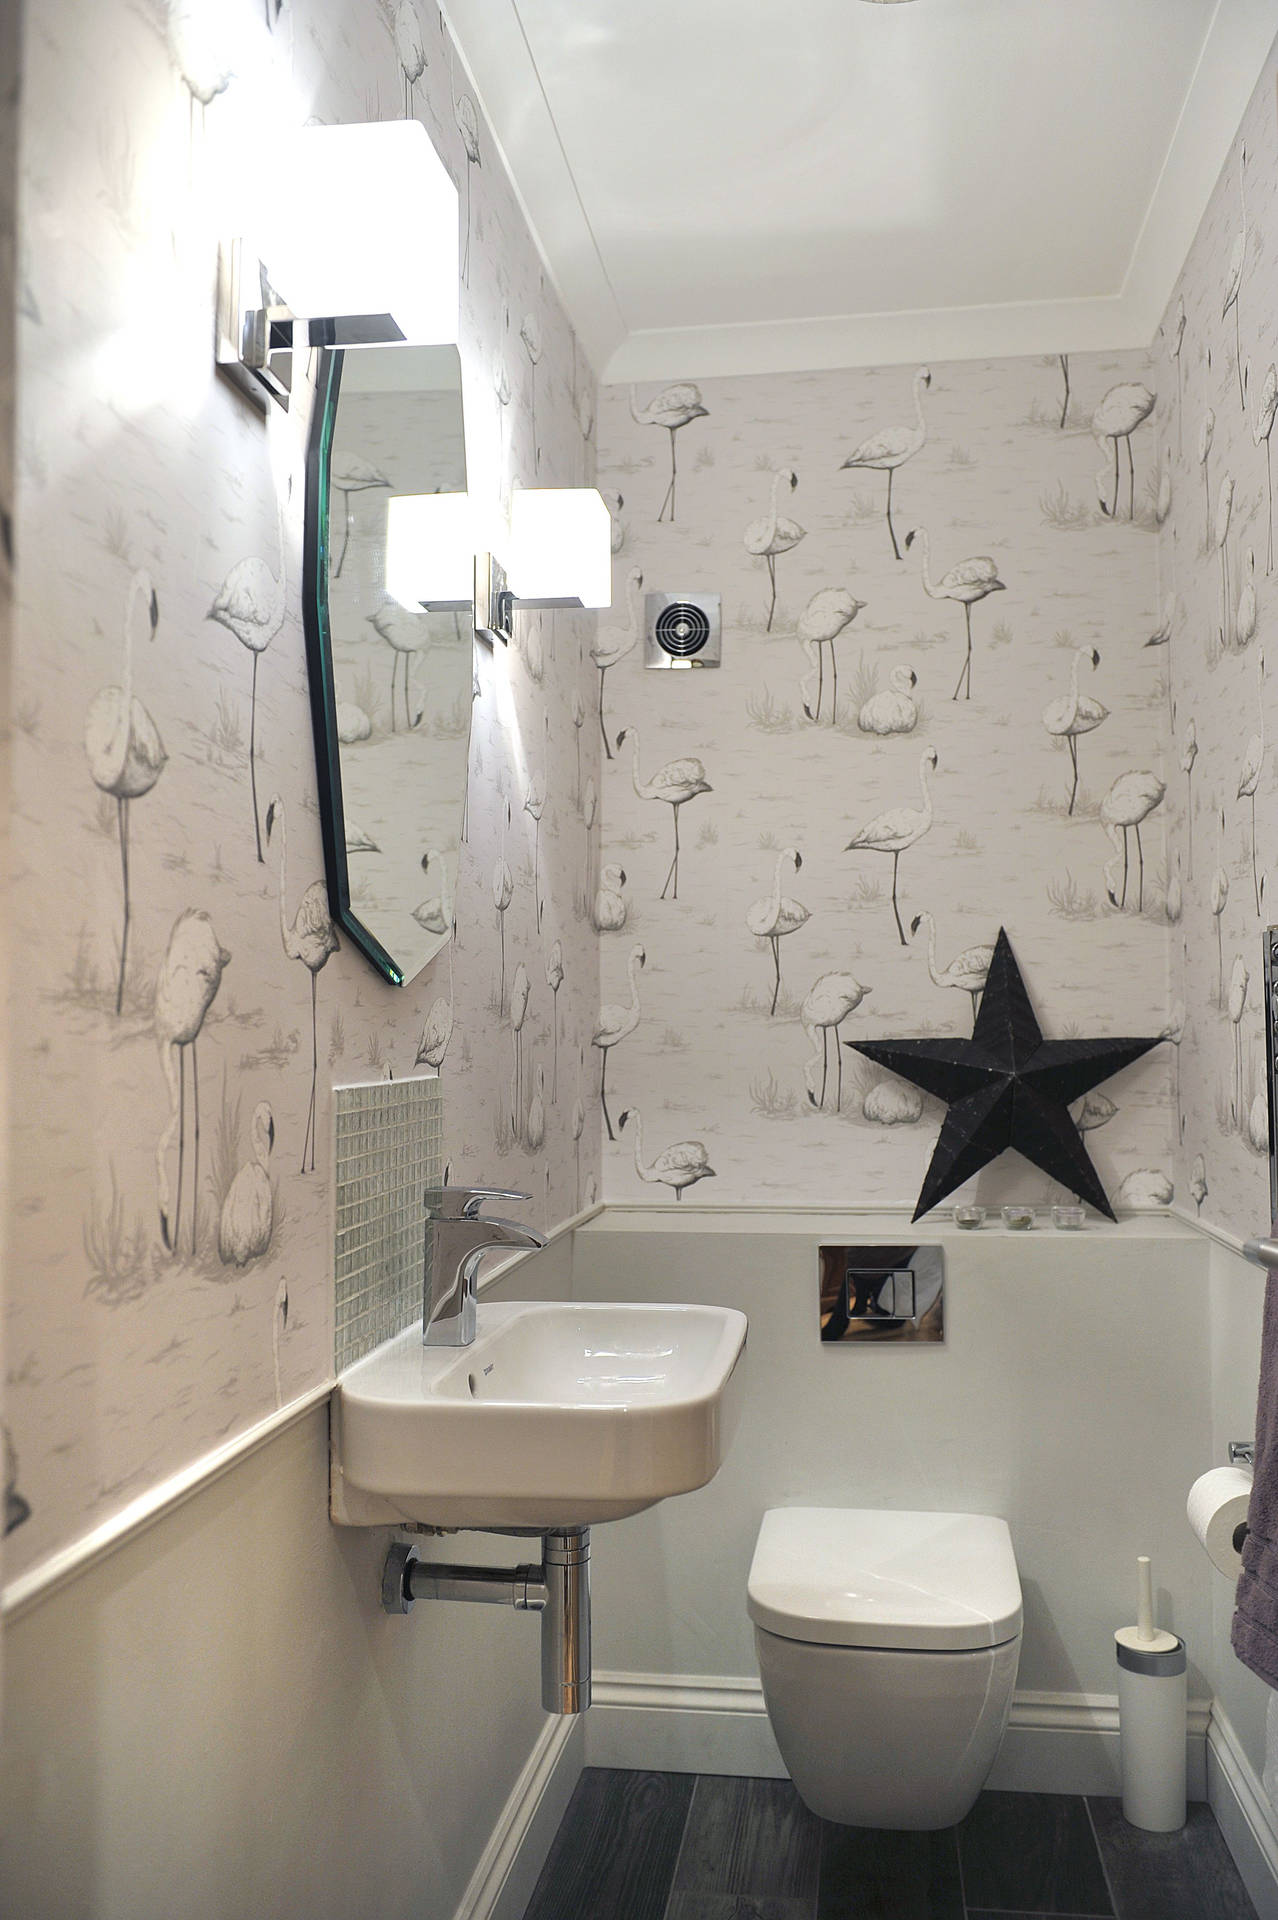 Toilet Flamingo Black&White Wallpaper